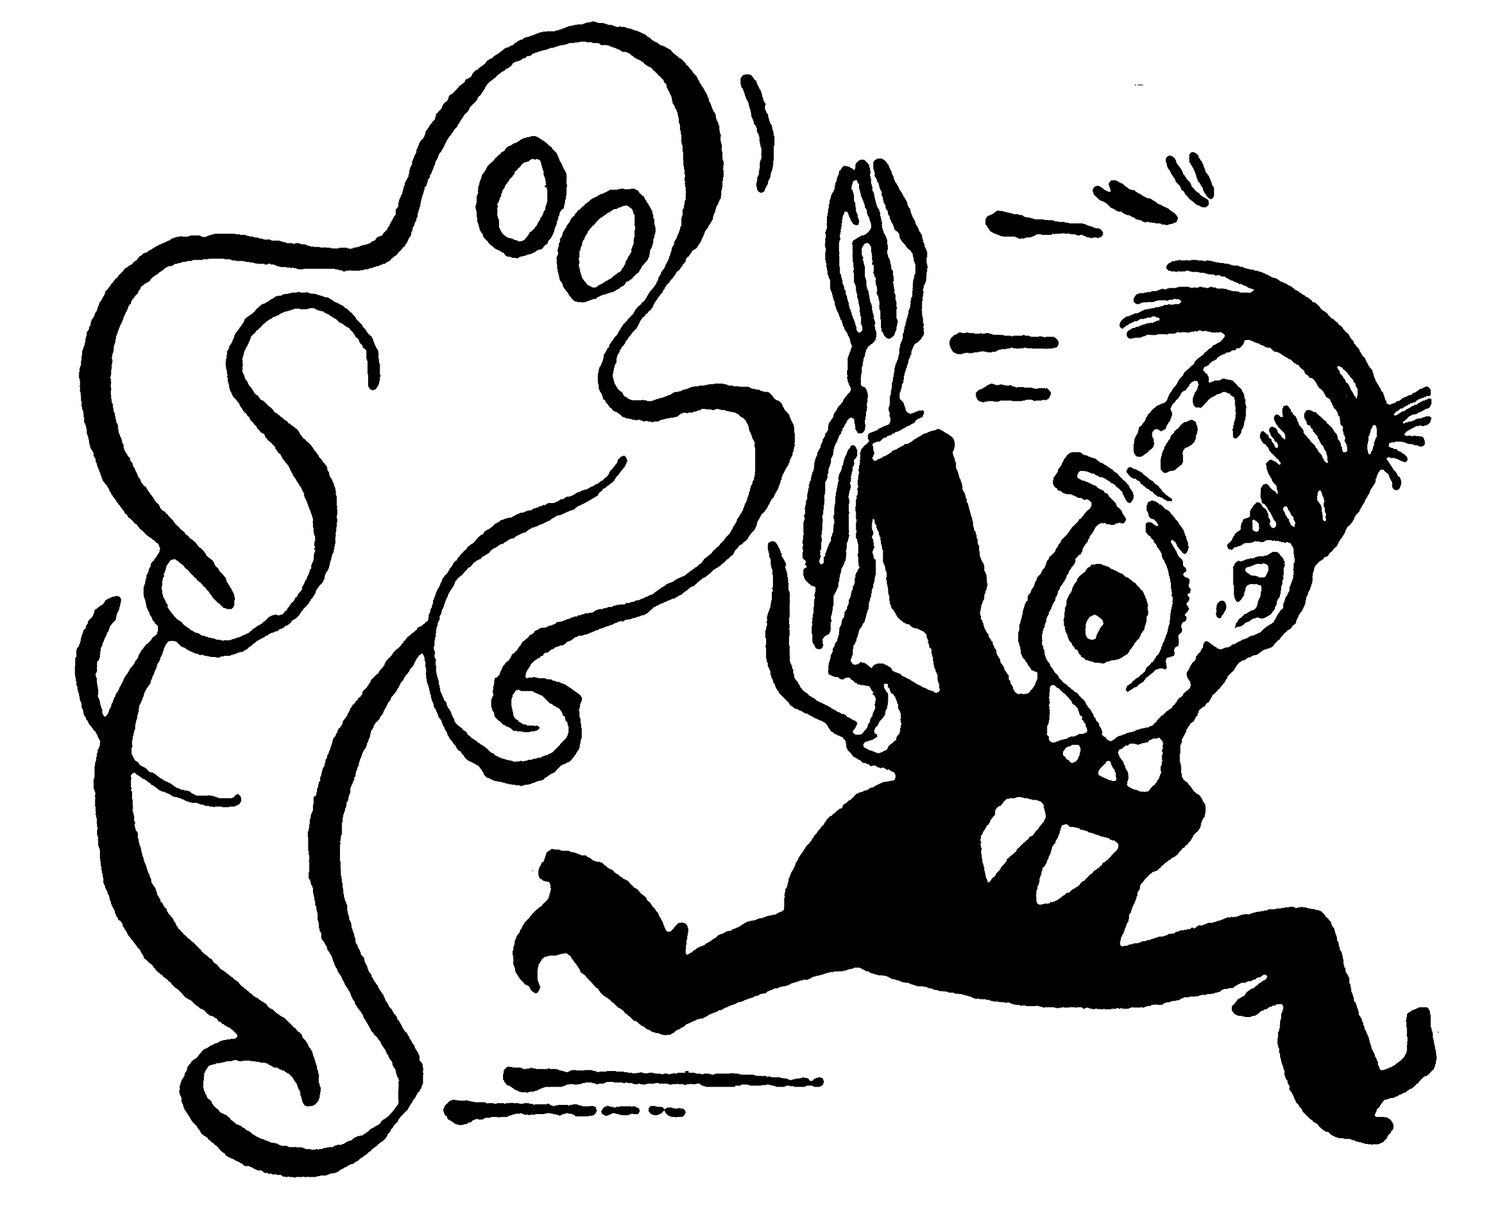 一个人从一个鬼跑的插图，代表了幻影债务的概念。＂class=